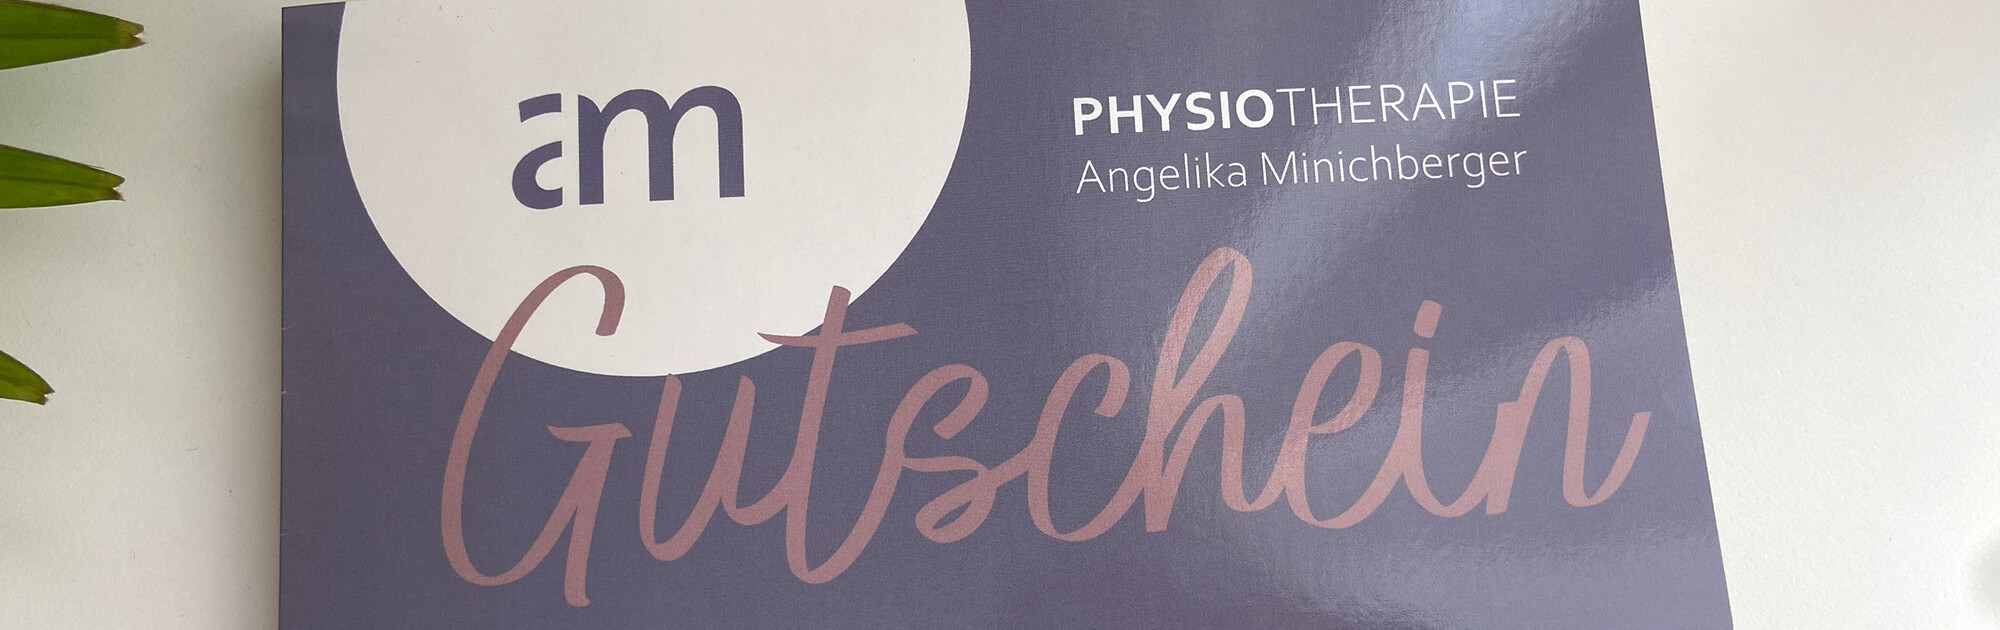 Physiotherapie Angelika Minichberger | Gutschein